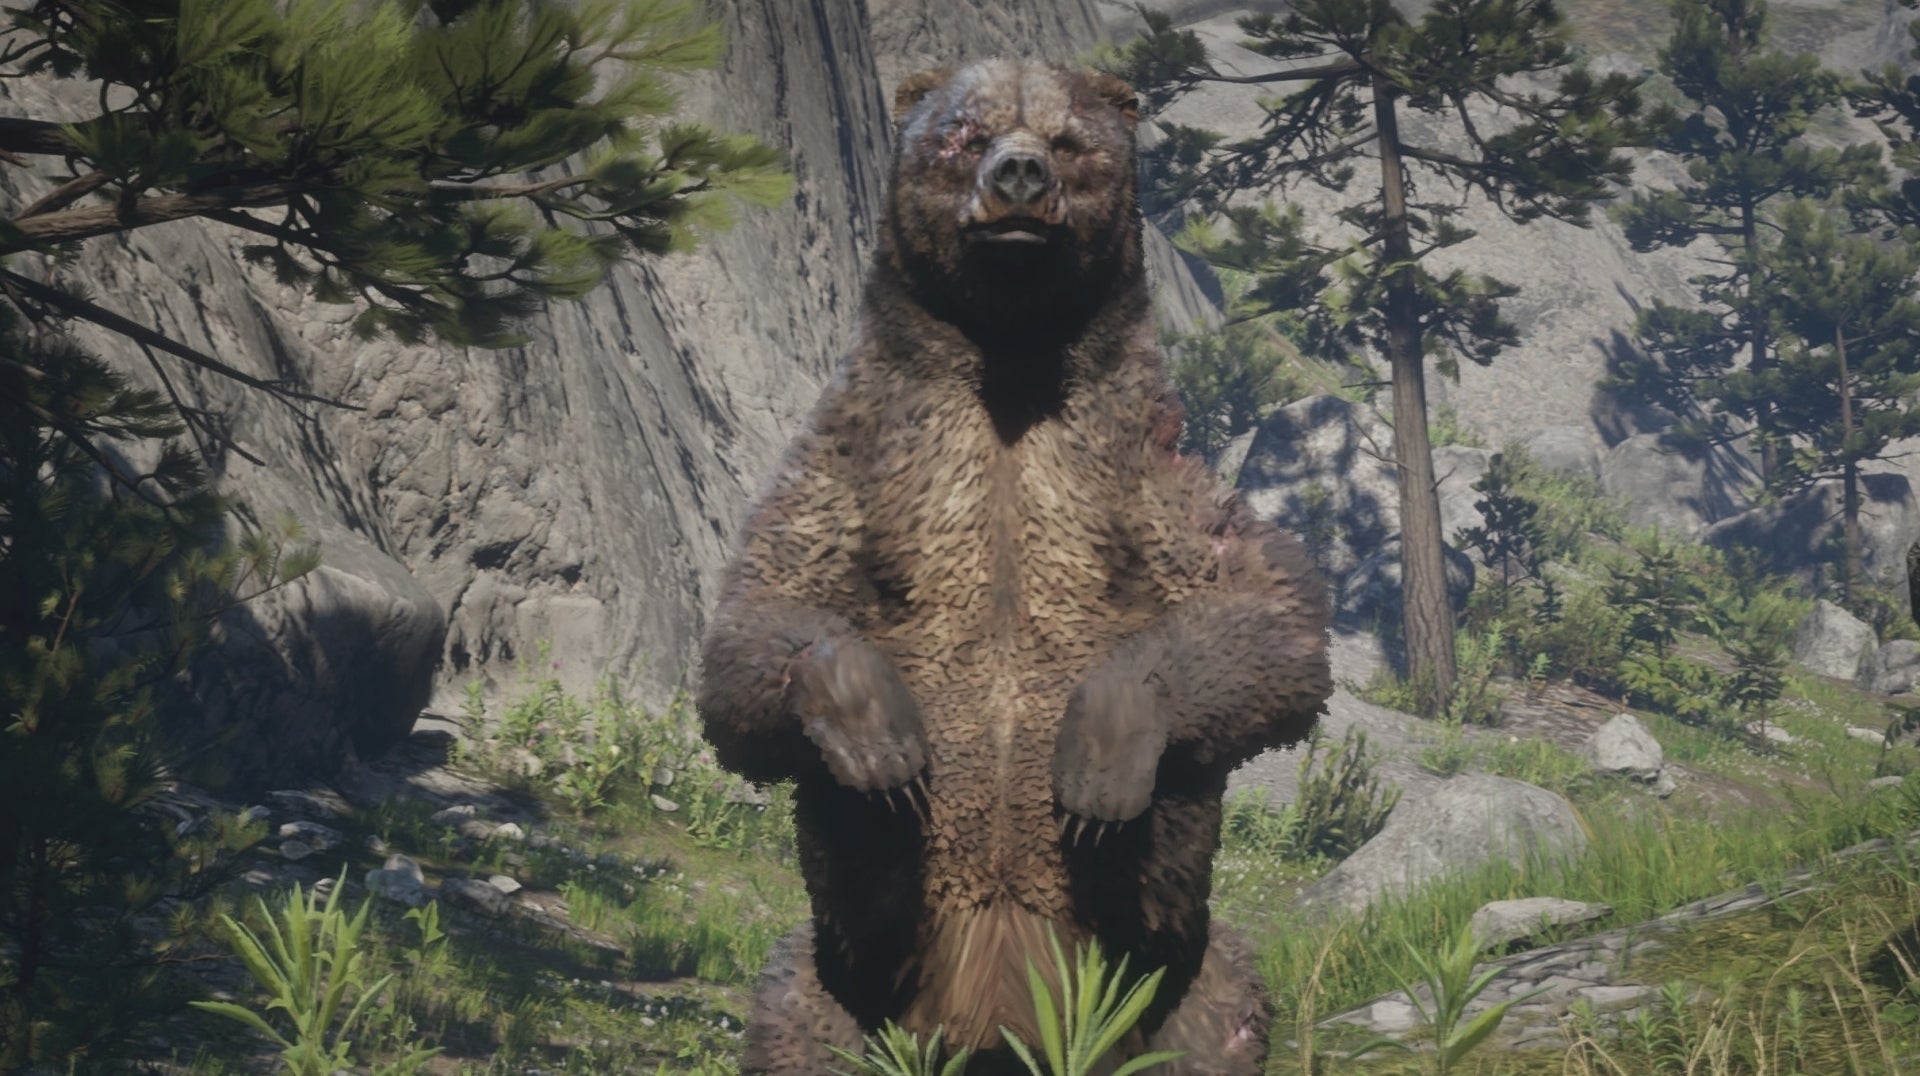 Bilder zu Sehr realistisch: Ihr könnt Grizzlybären in Red Dead Redemption 2 verscheuchen, indem ihr euch nicht rührt